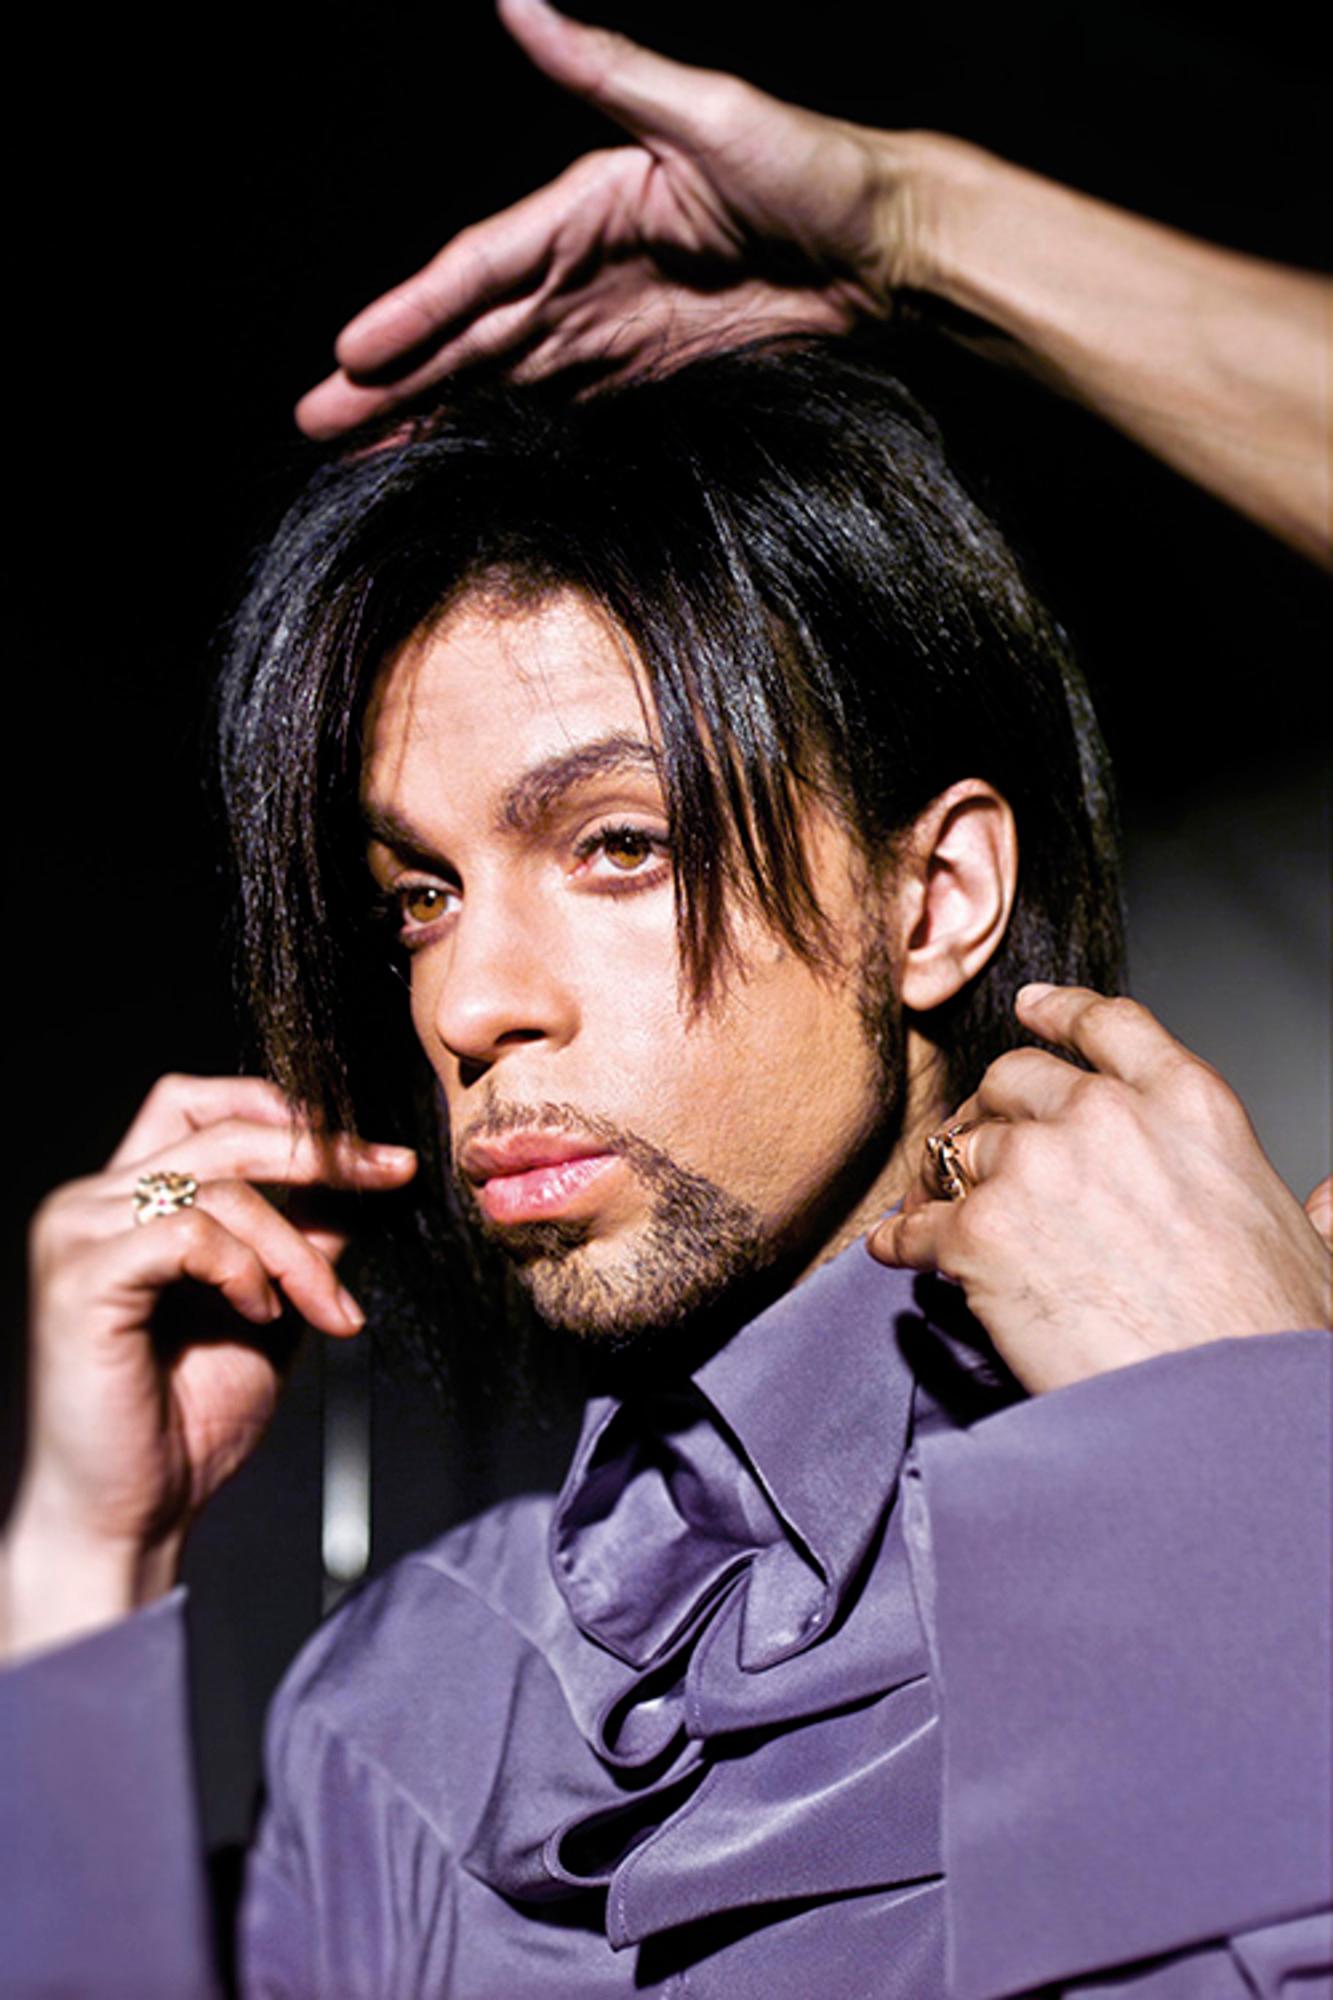 Porträt des amerikanischen Singer-Songwriters, Multiinstrumentalisten und Plattenproduzenten Prince.

Verfügbare Größen: 
16 "x12" Auflage von 25
20 "x16" Auflage von 25
24 "x20" Auflage von 25
40 "x30" Auflage von 25
60 "x40" Auflage von 25
72